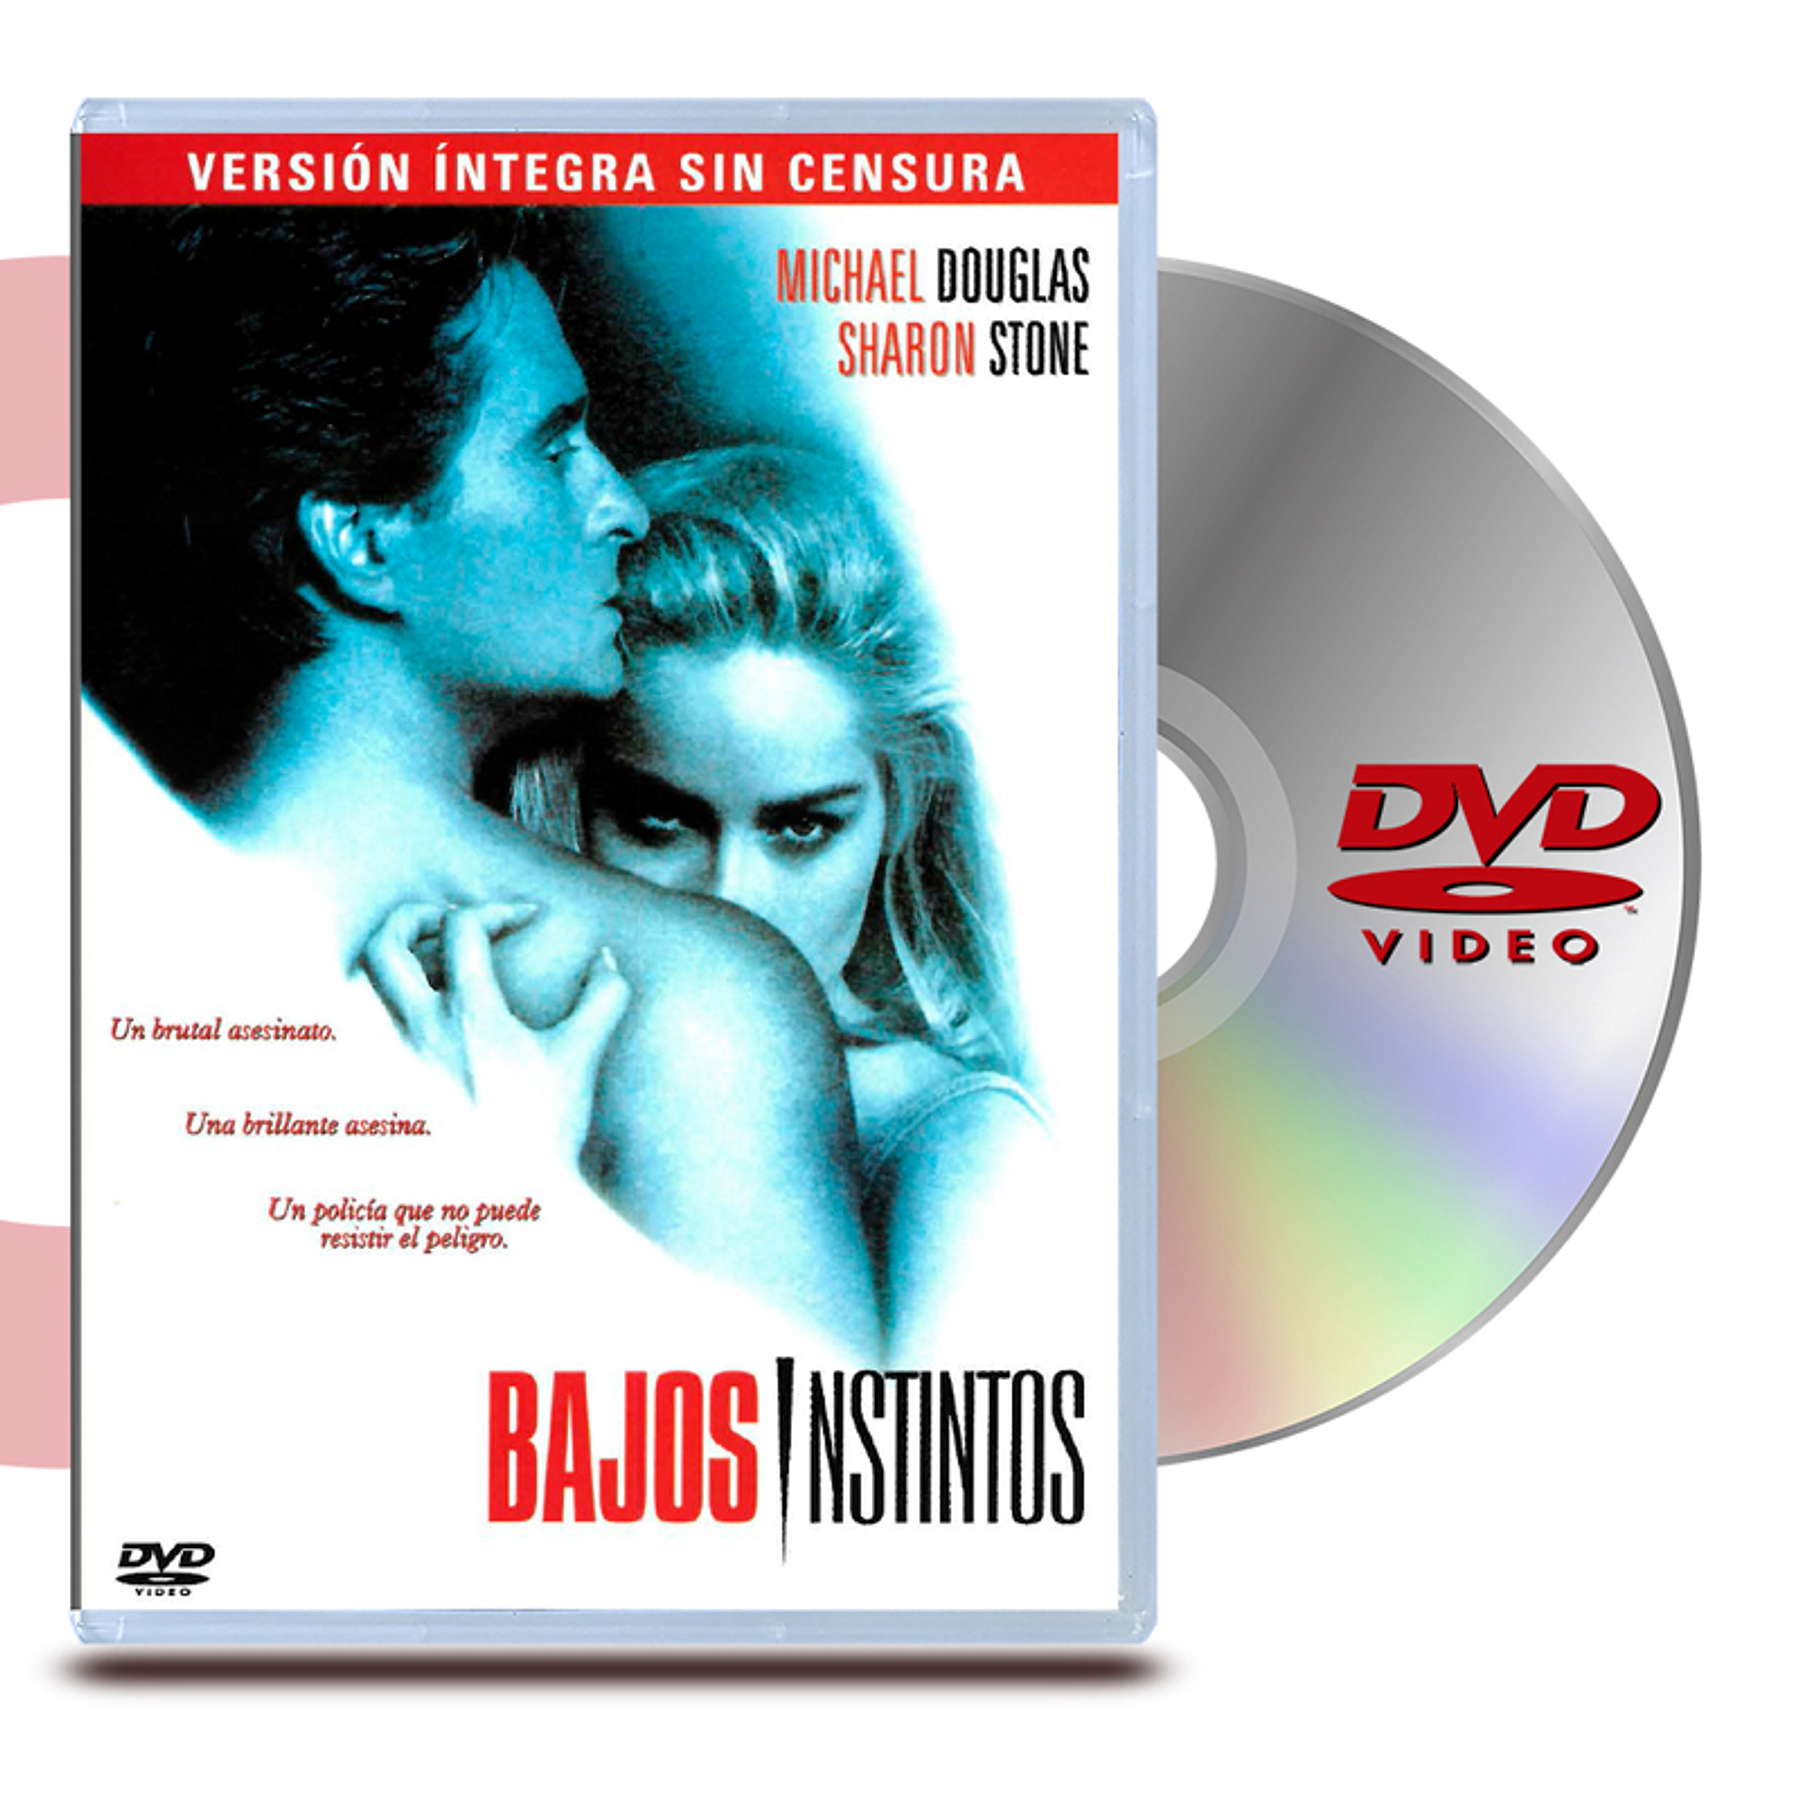 DVD BAJOS INSTINTOS